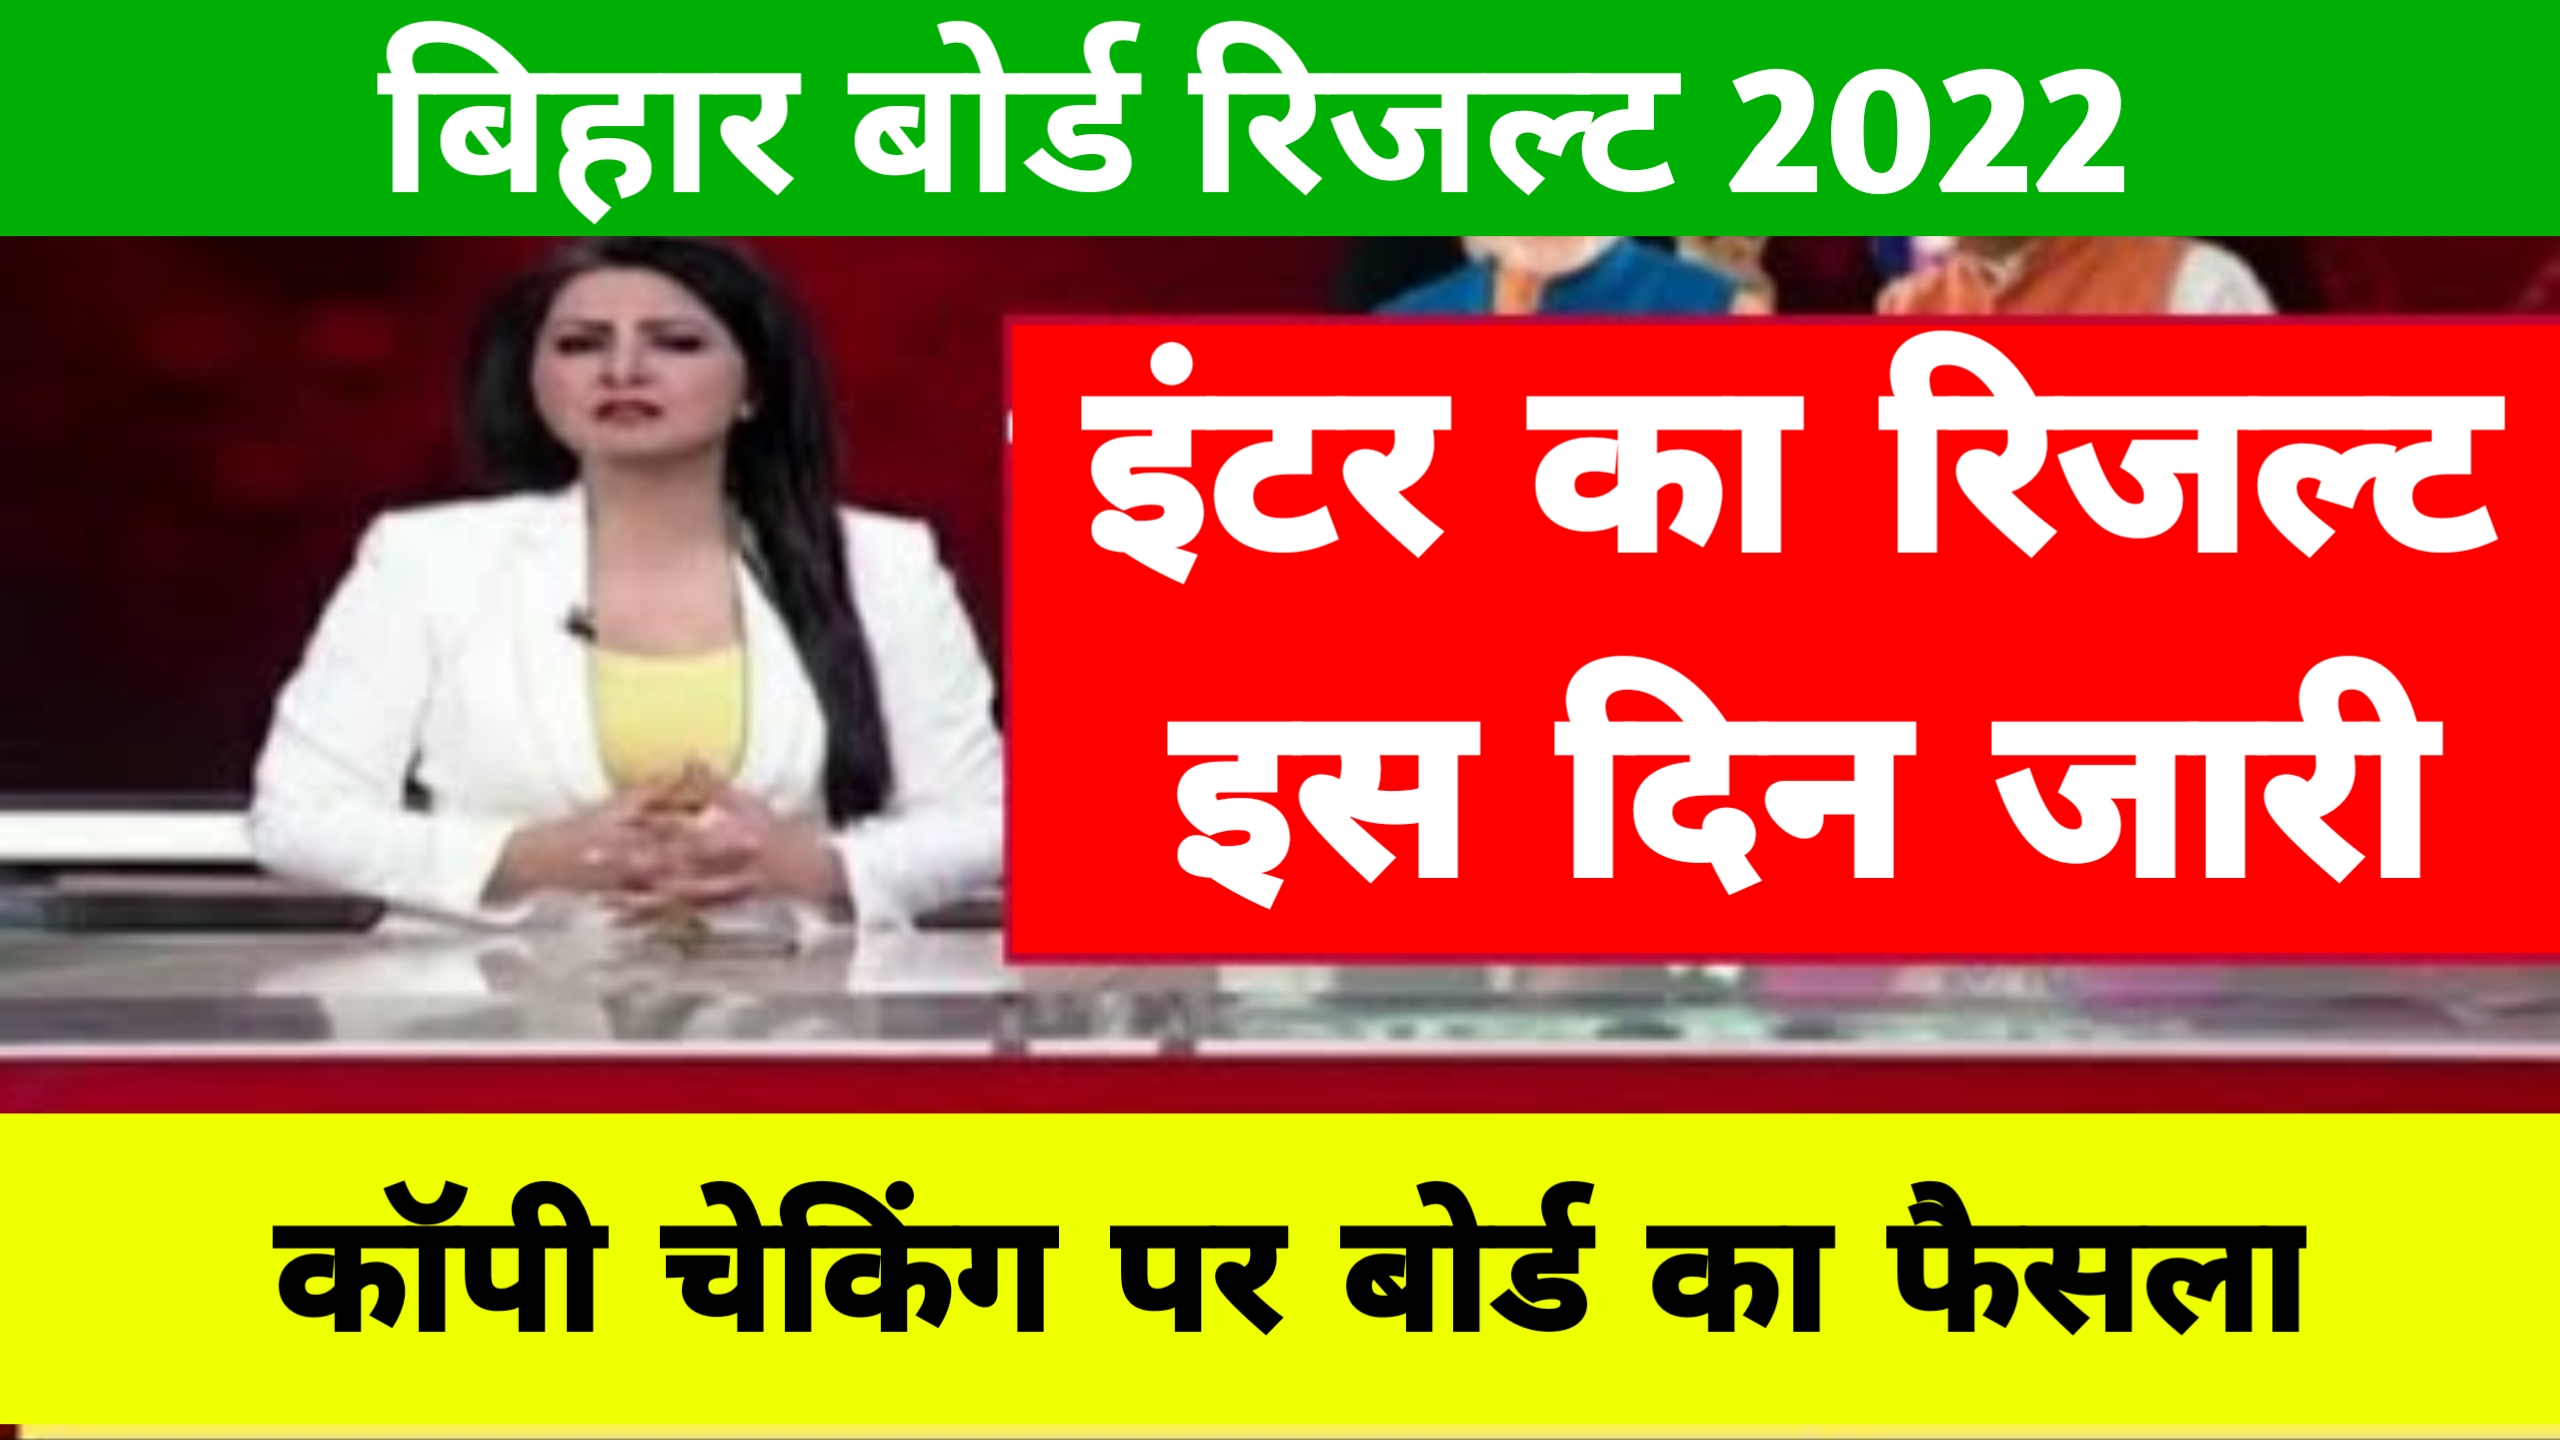 Bihar Board 12th Result 2022 Live Update : इंटर के नतीजे सबसे पहले यहां से देखें